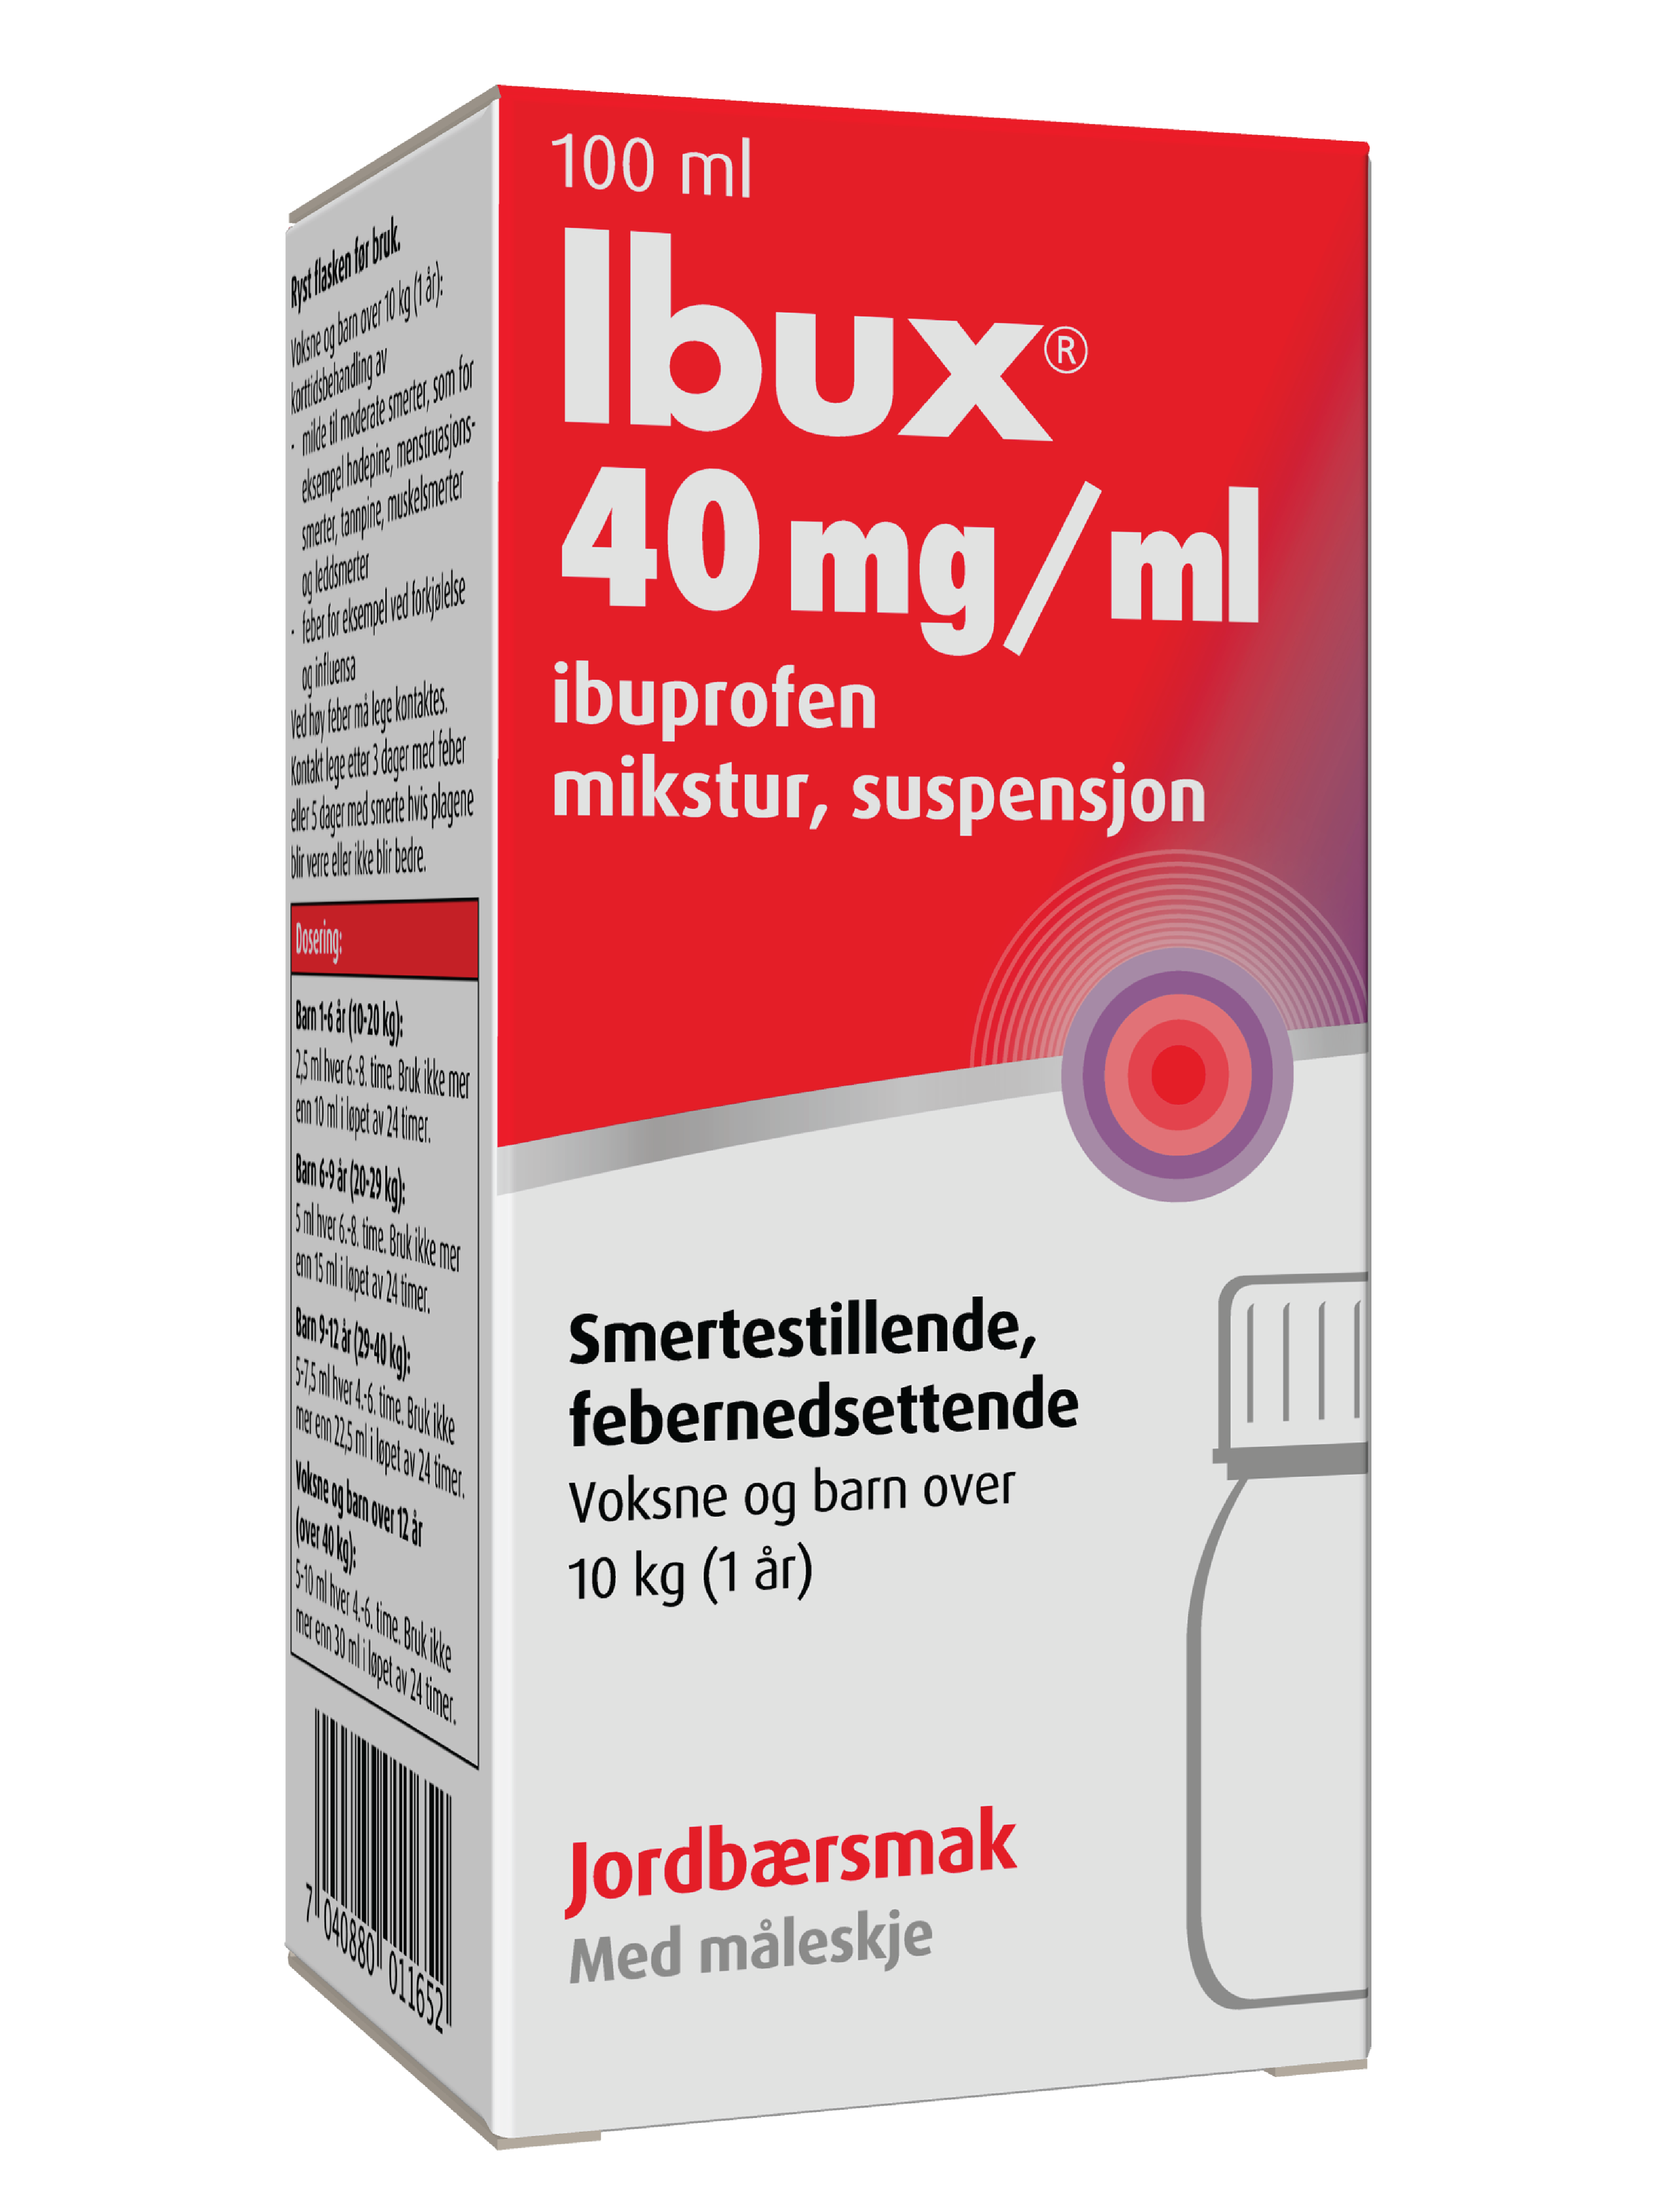 Ibux Mikstur 40mg/ml jordbær, 100 ml